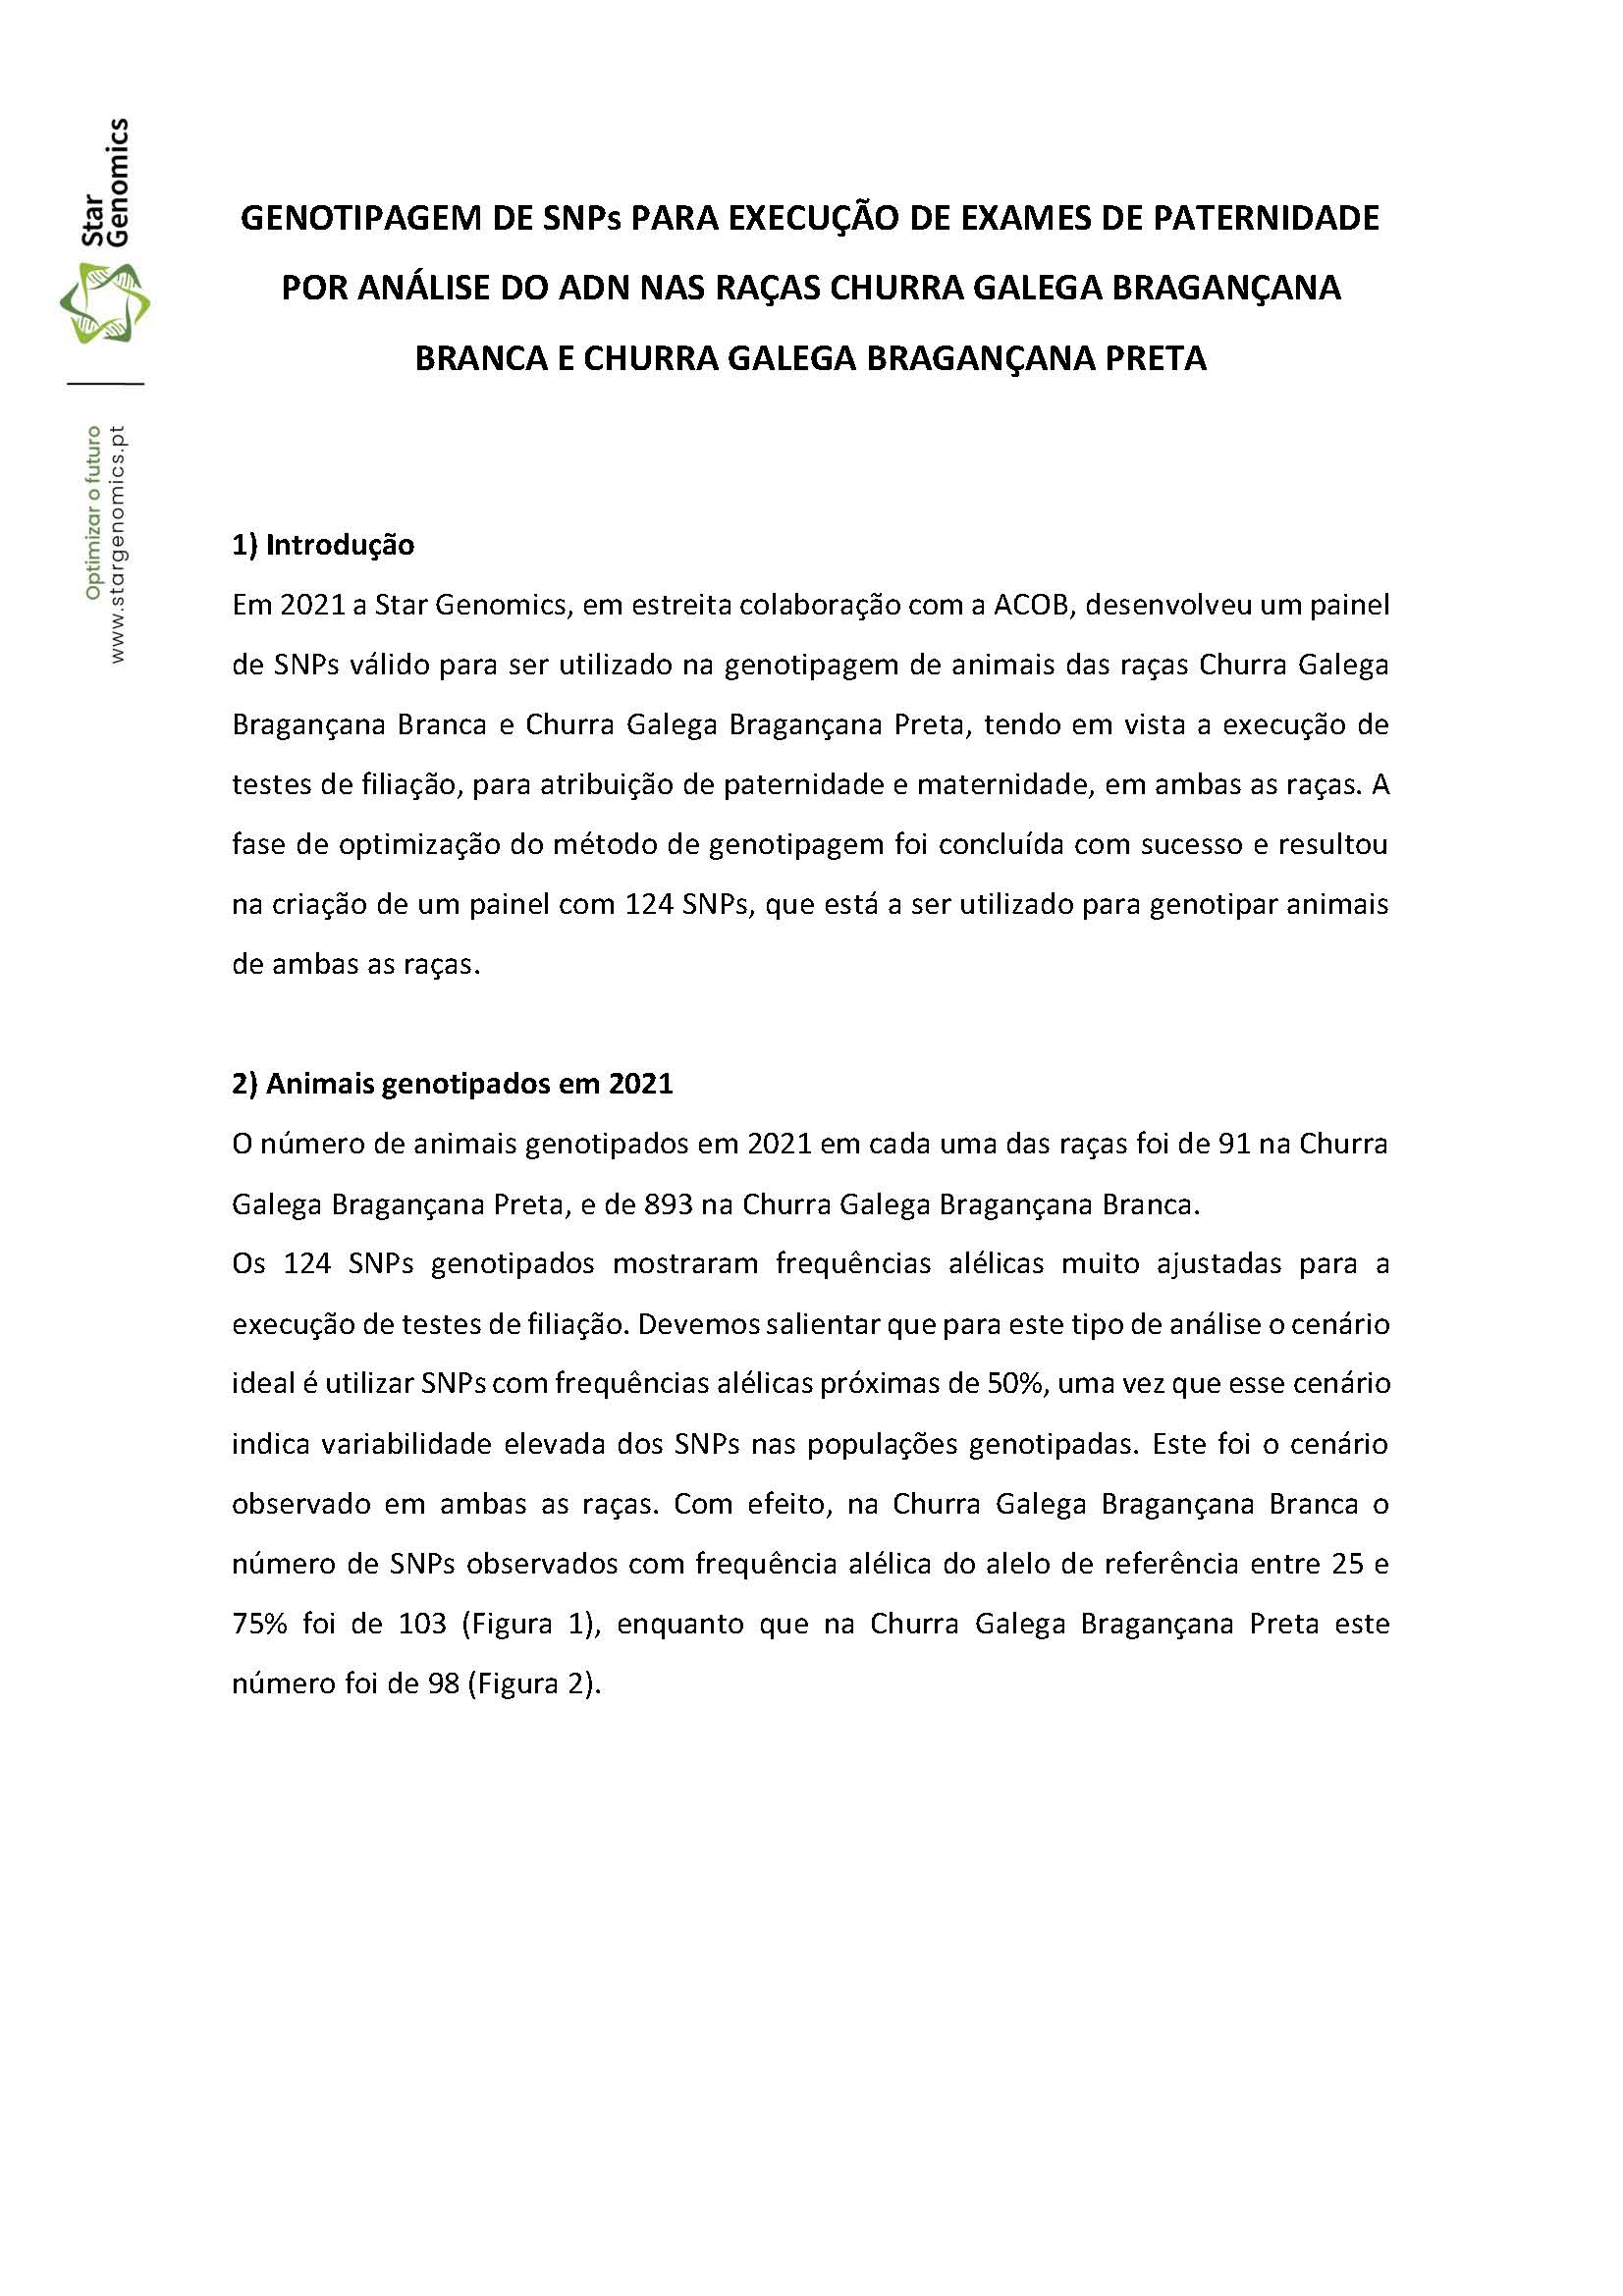 Relatório genotipagem paternidades Churra Galega Bragançana 2022 03 31 Page 1